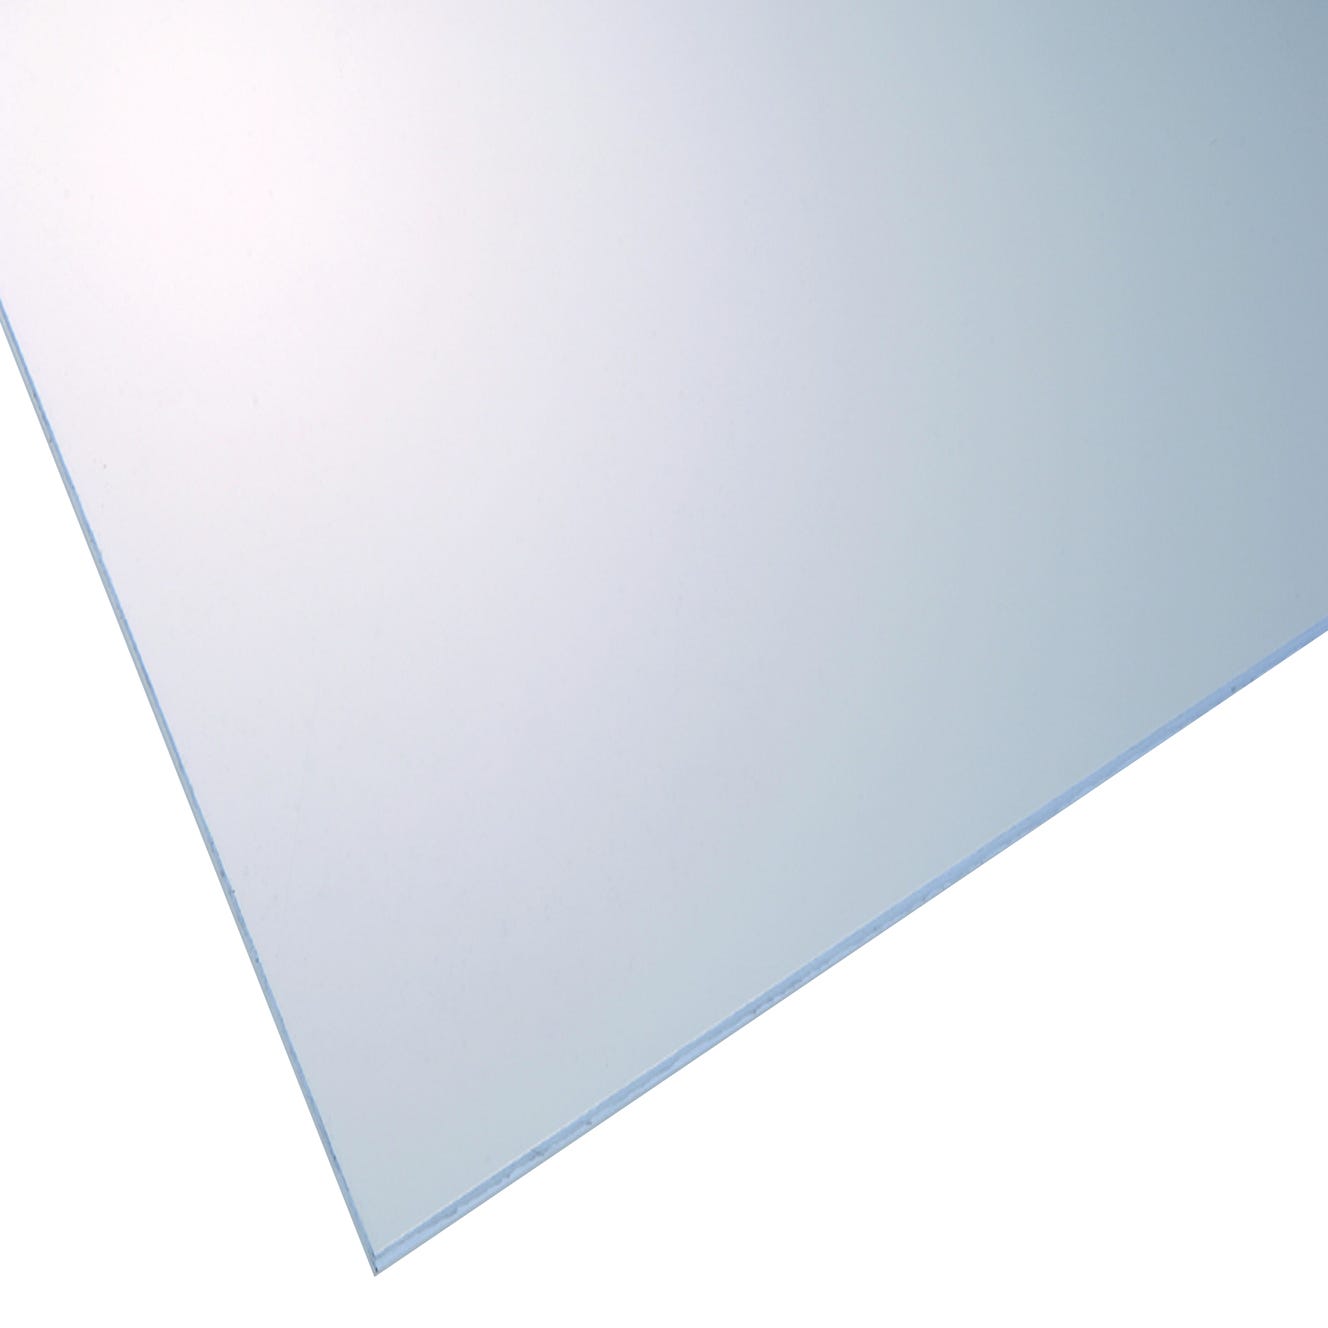 Vidrio plástico transparente liso de 4 mm de grosor y 100x100cm